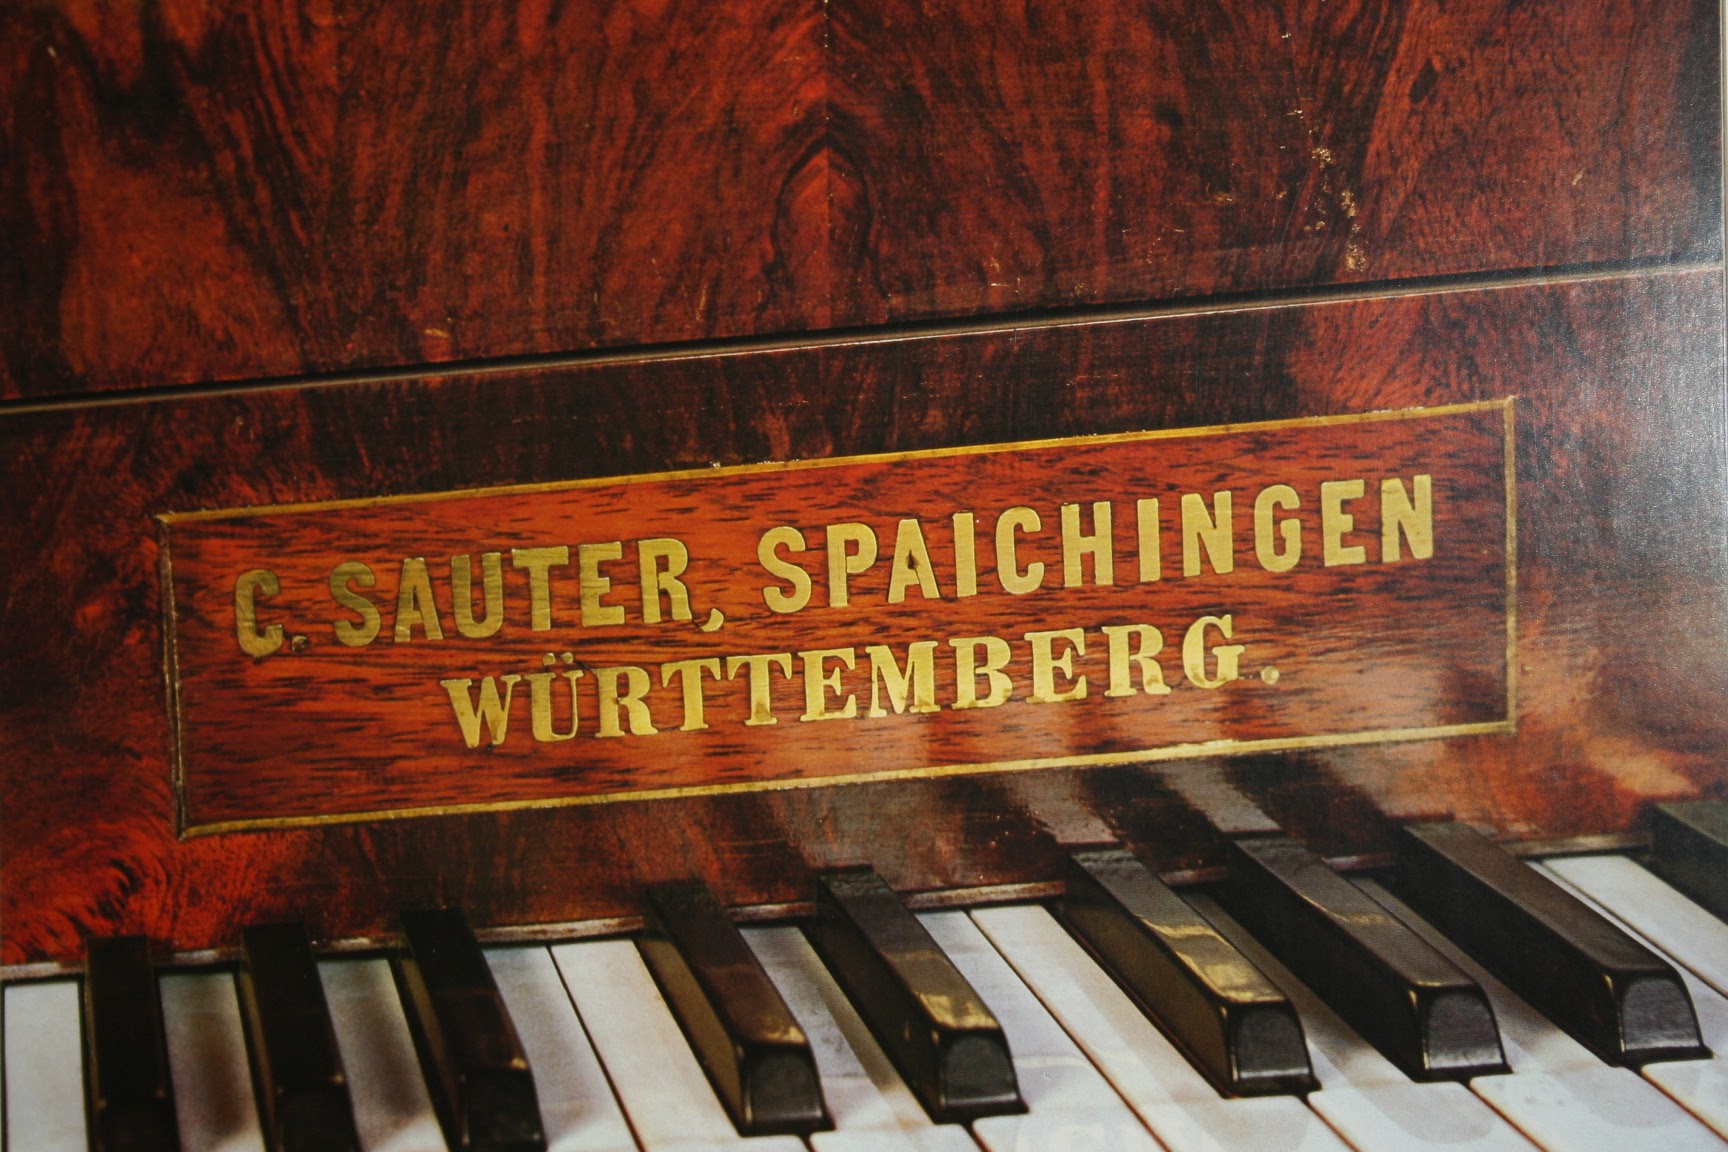 店長よりご挨拶 ザウターが南ドイツの小さな町シュパイヒンゲンでピアノを製作を始めたのは1819年。すでに200年以上の時が経ちました。 伝統あるザウター家6代に伝わる高度なピアノ製作技術とピアノに対する高いモラル。他メーカーには少なくなったハンドメイドを基調とした誠実なピアノから生まれる音楽性豊かな […]